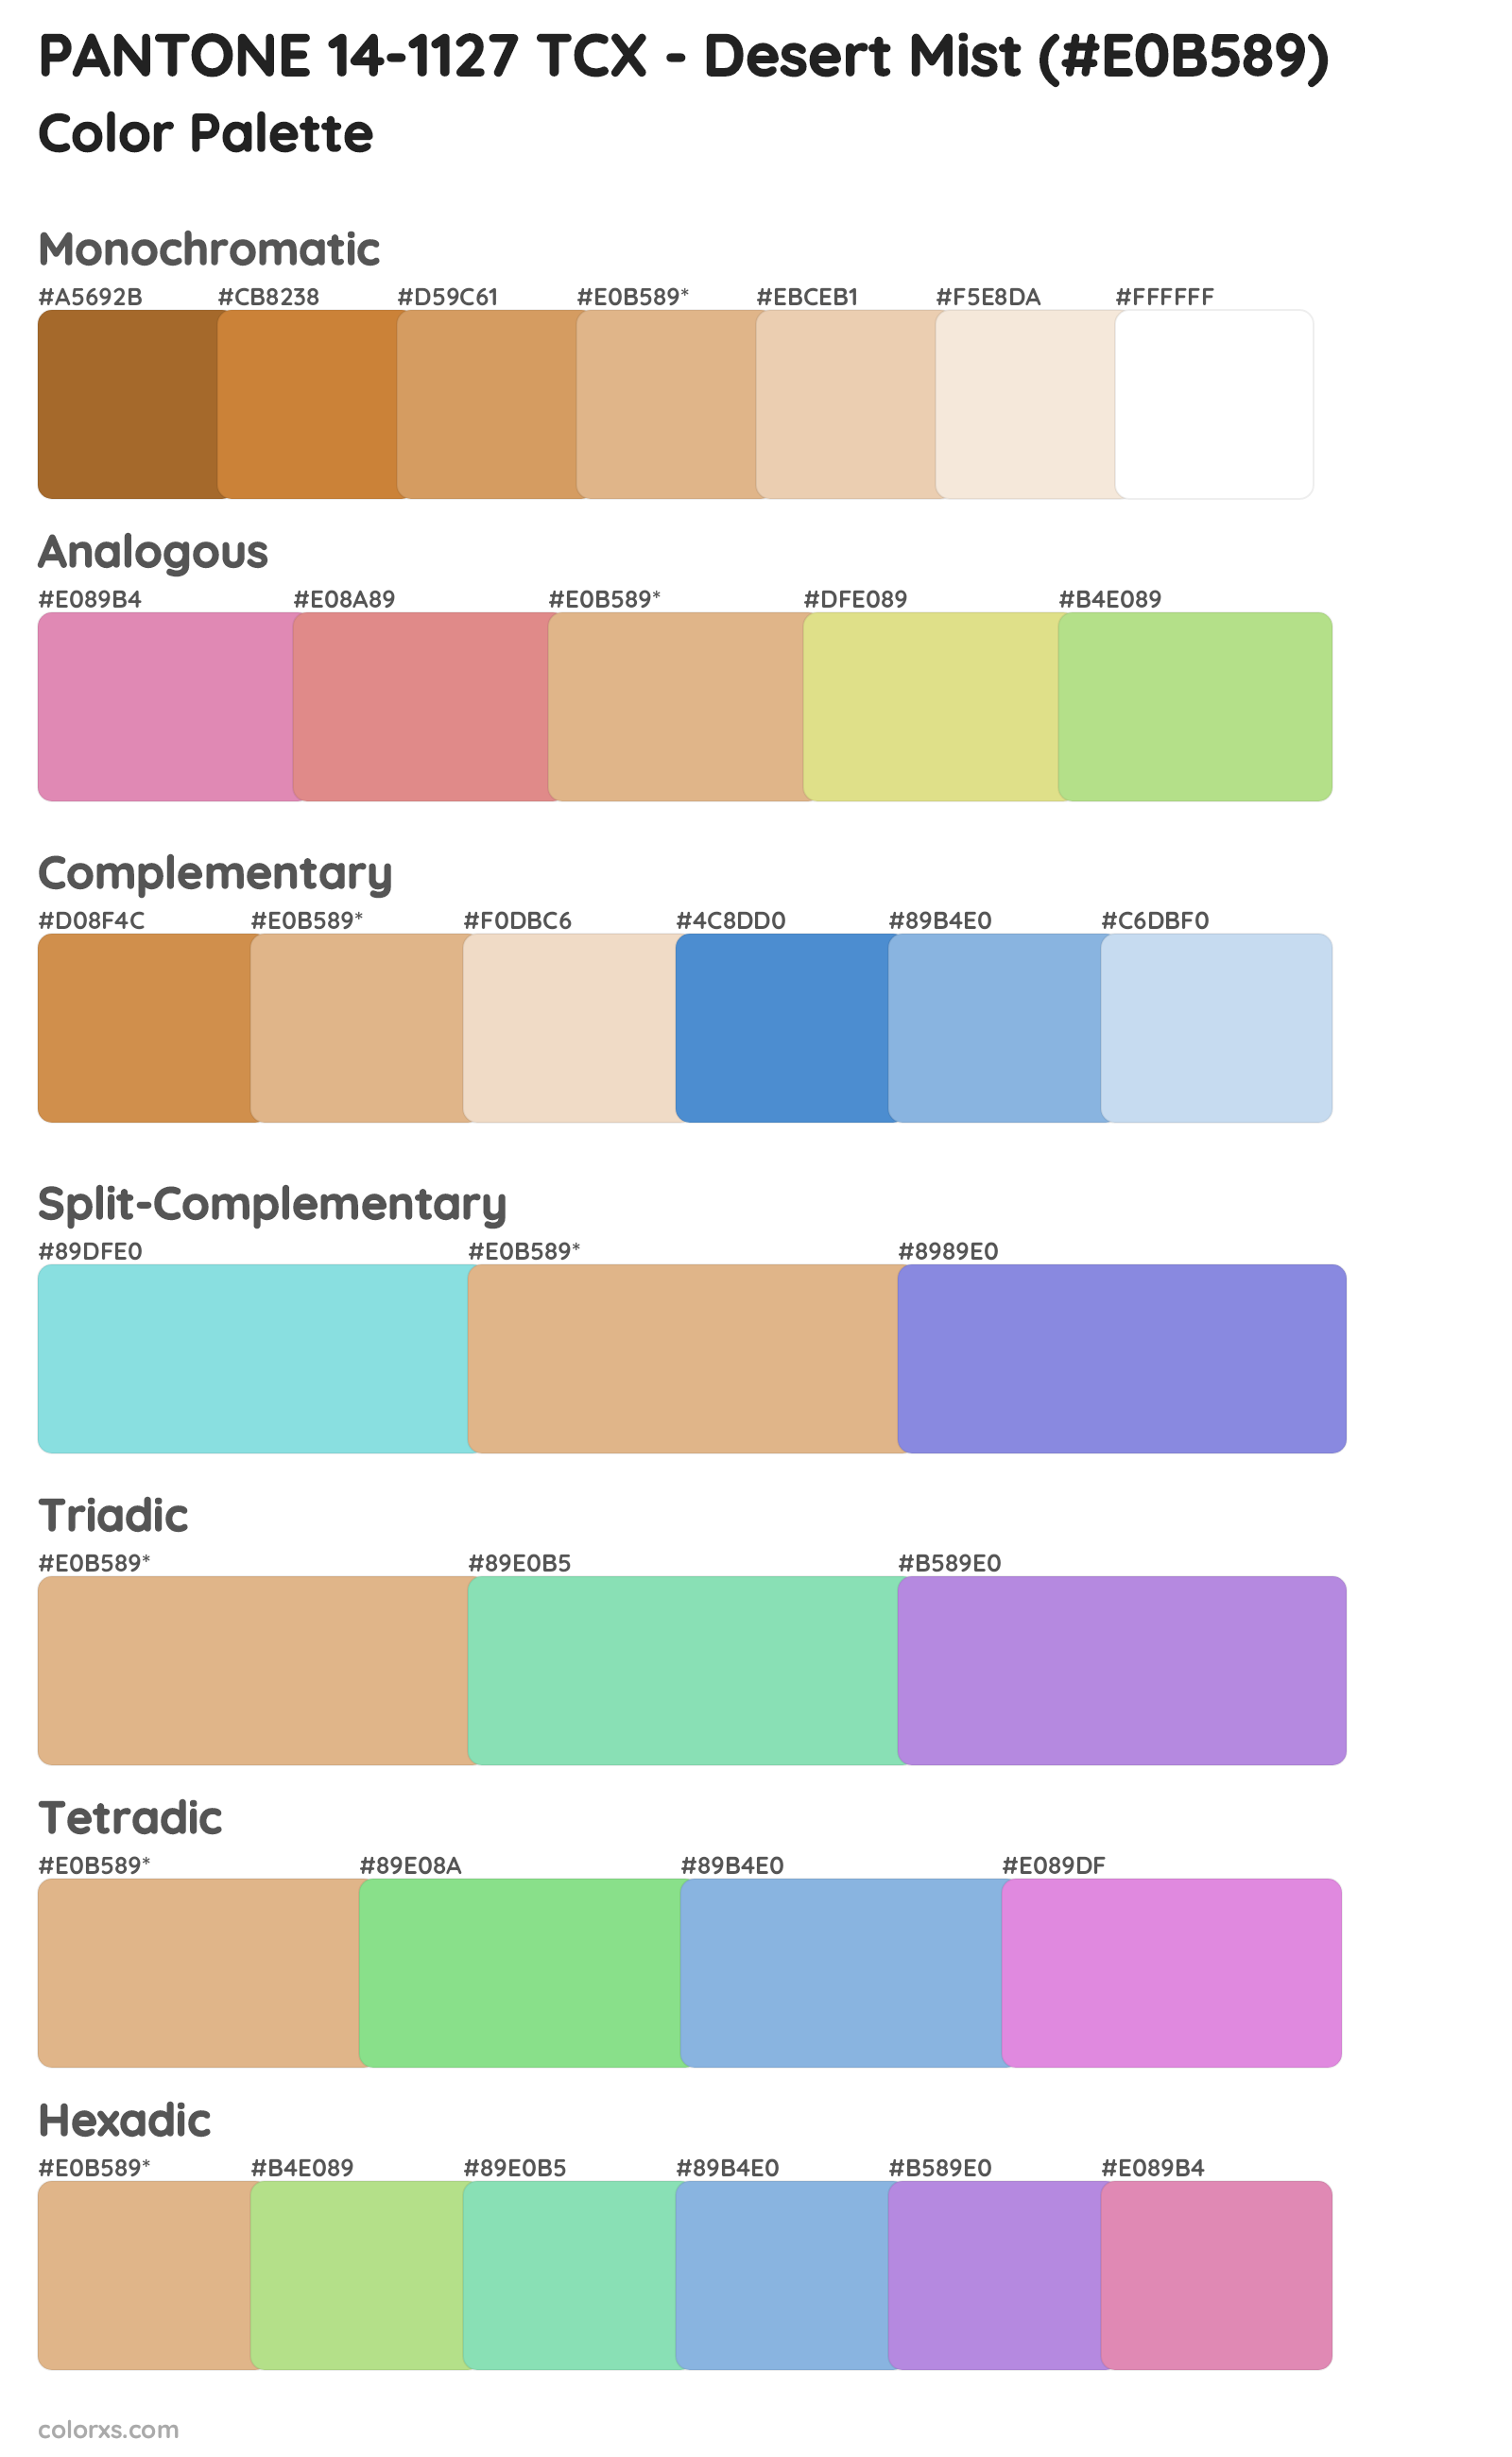 PANTONE 14-1127 TCX - Desert Mist Color Scheme Palettes